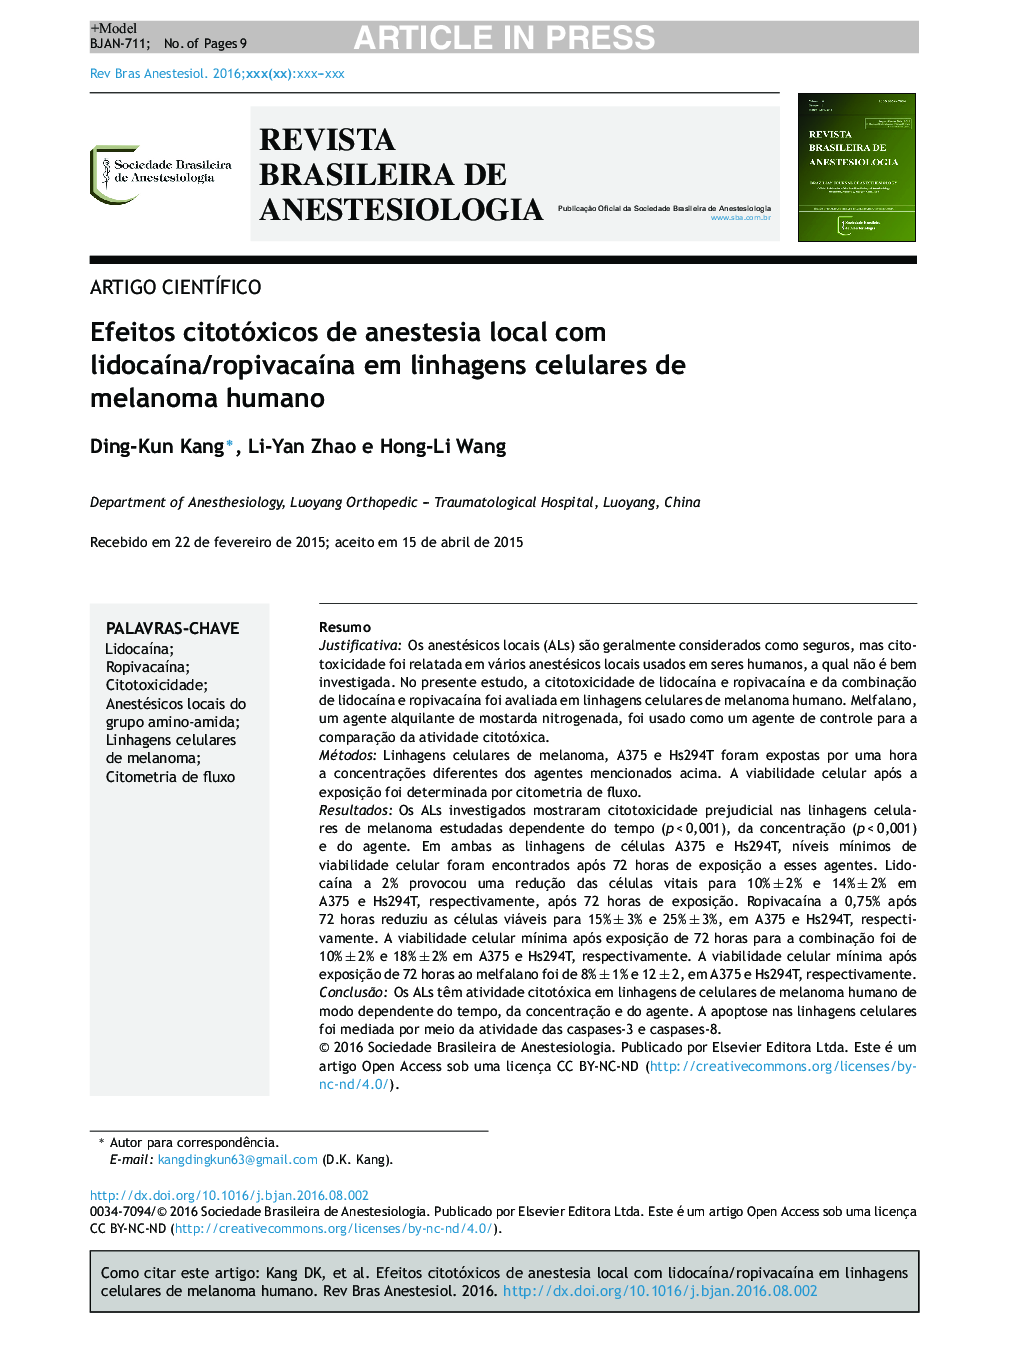 Efeitos citotóxicos de anestesia local com lidocaÃ­na/ropivacaÃ­na em linhagens celulares de melanoma humano